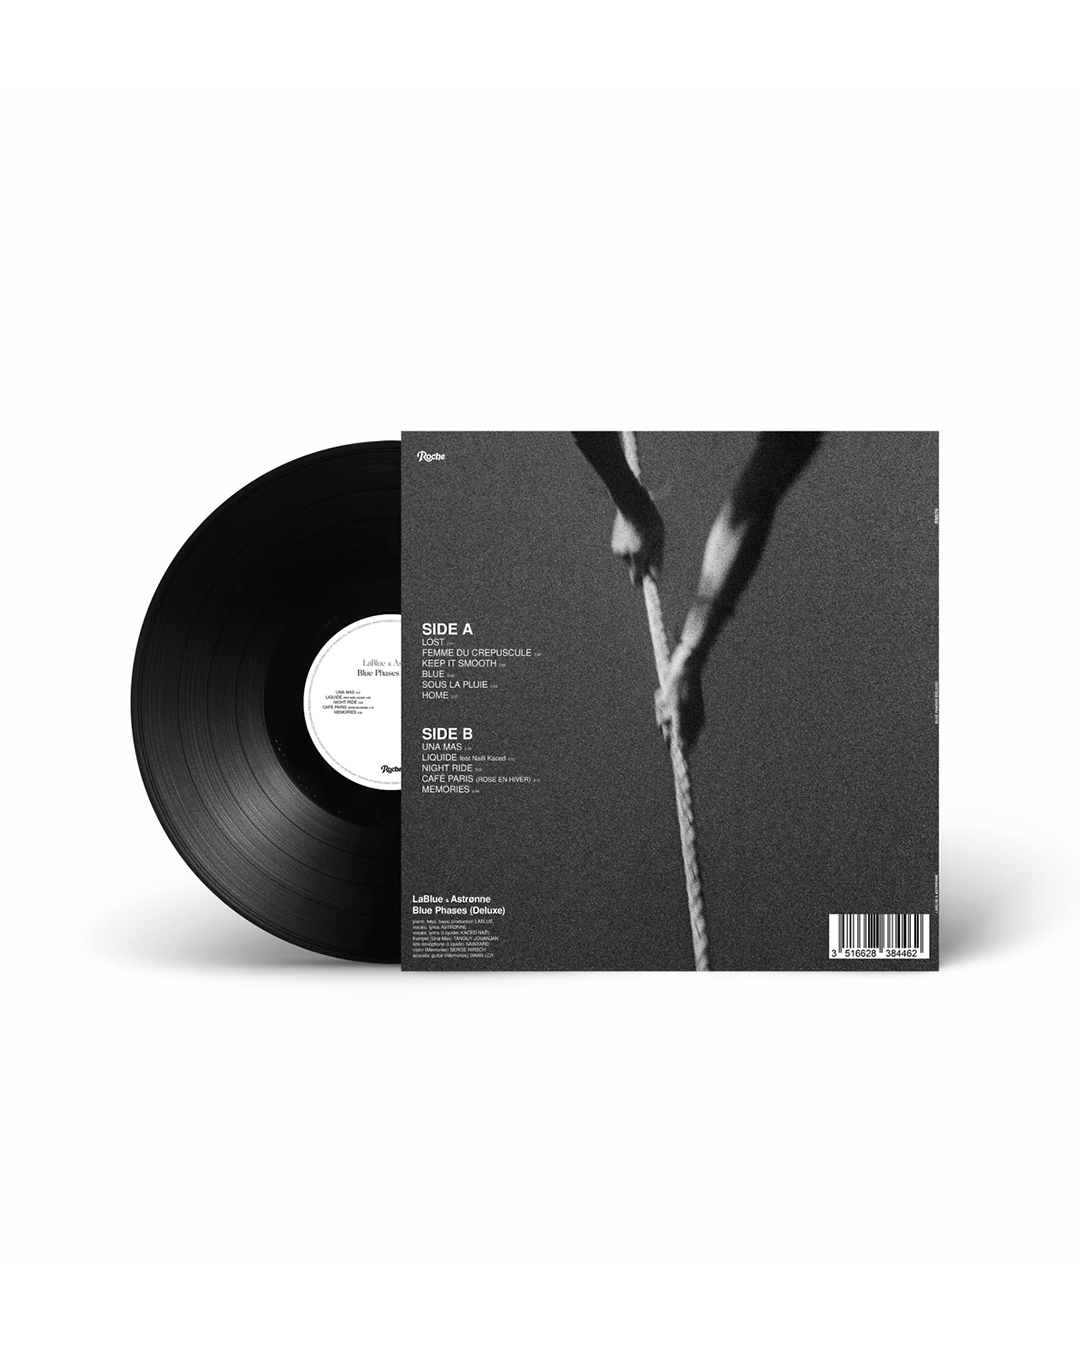 LABLUE & ASTRØNNE - BLUE PHASES (Deluxe) - VINYL 12